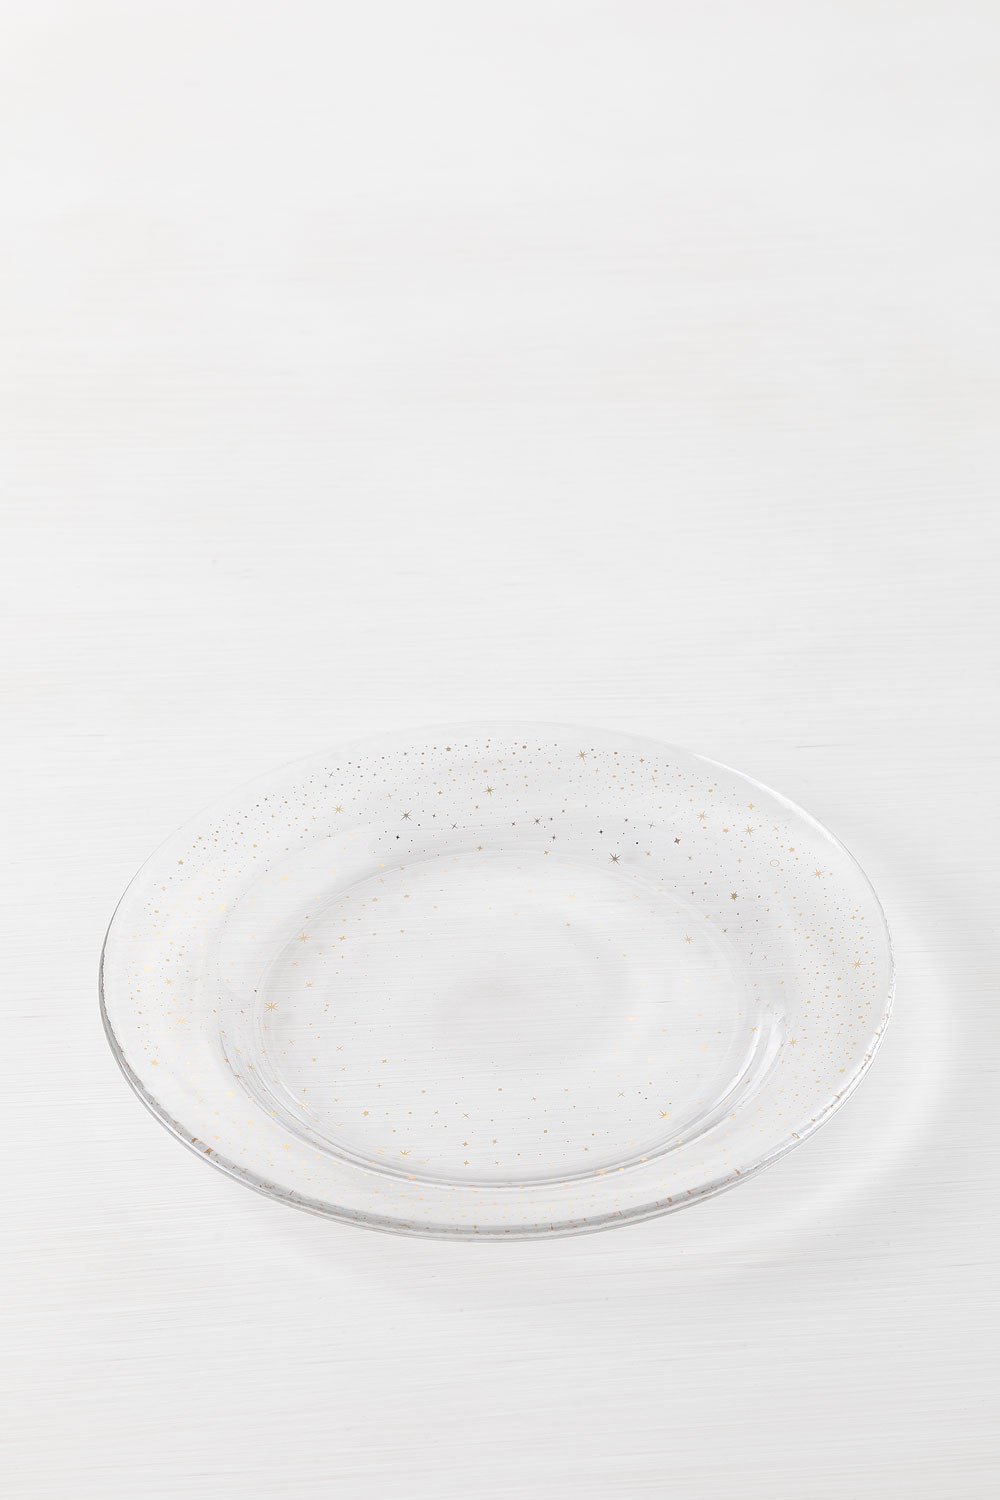 Pak van 4 Dessertborden in Byron Glass, galerij beeld 1